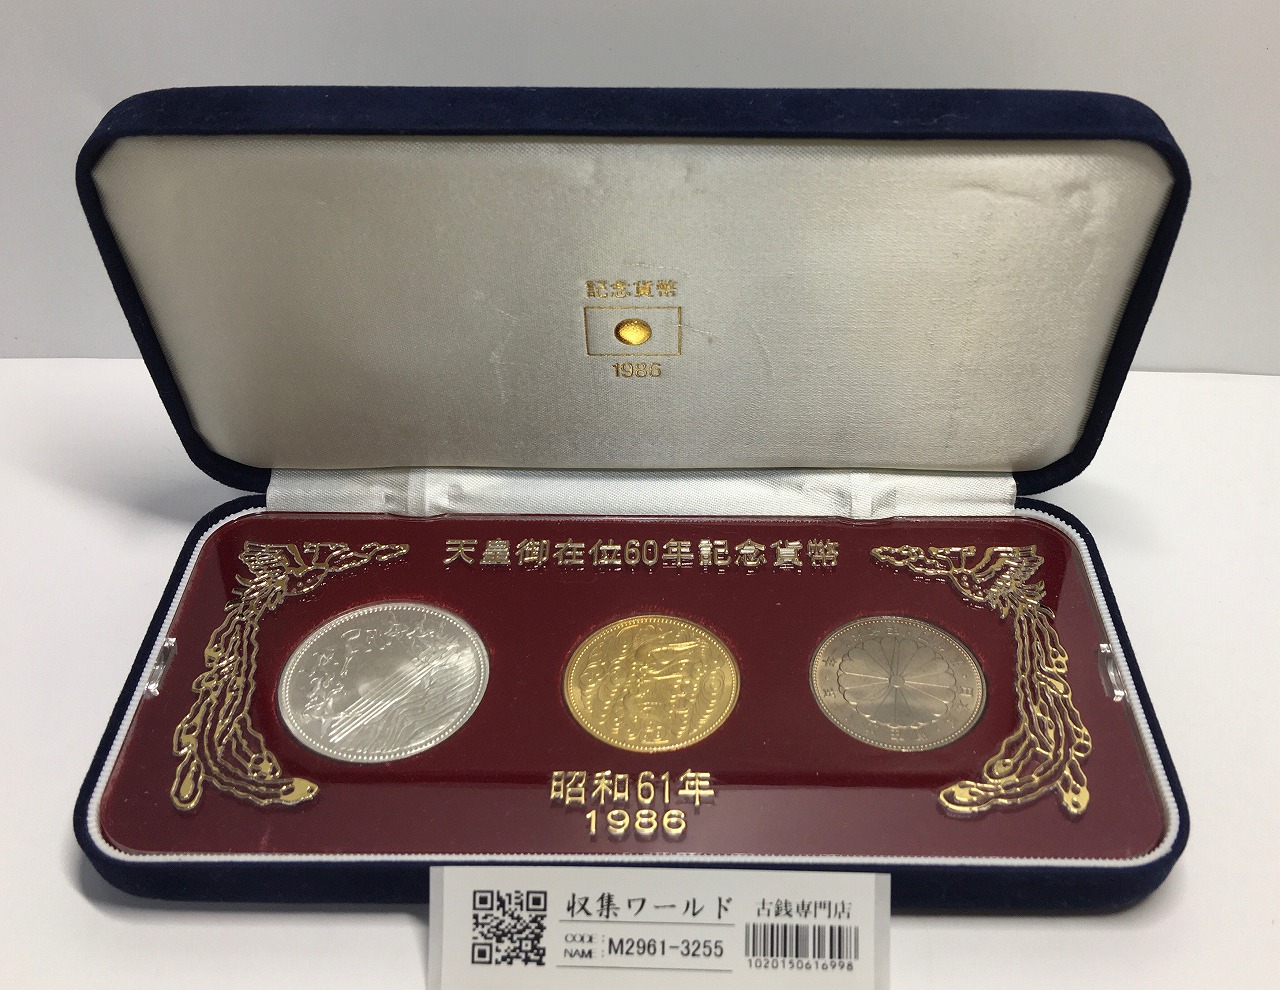 天皇御在位60年記念貨幣/金銀銅3枚セット 昭和61年銘 スペシャル箱入/限定品